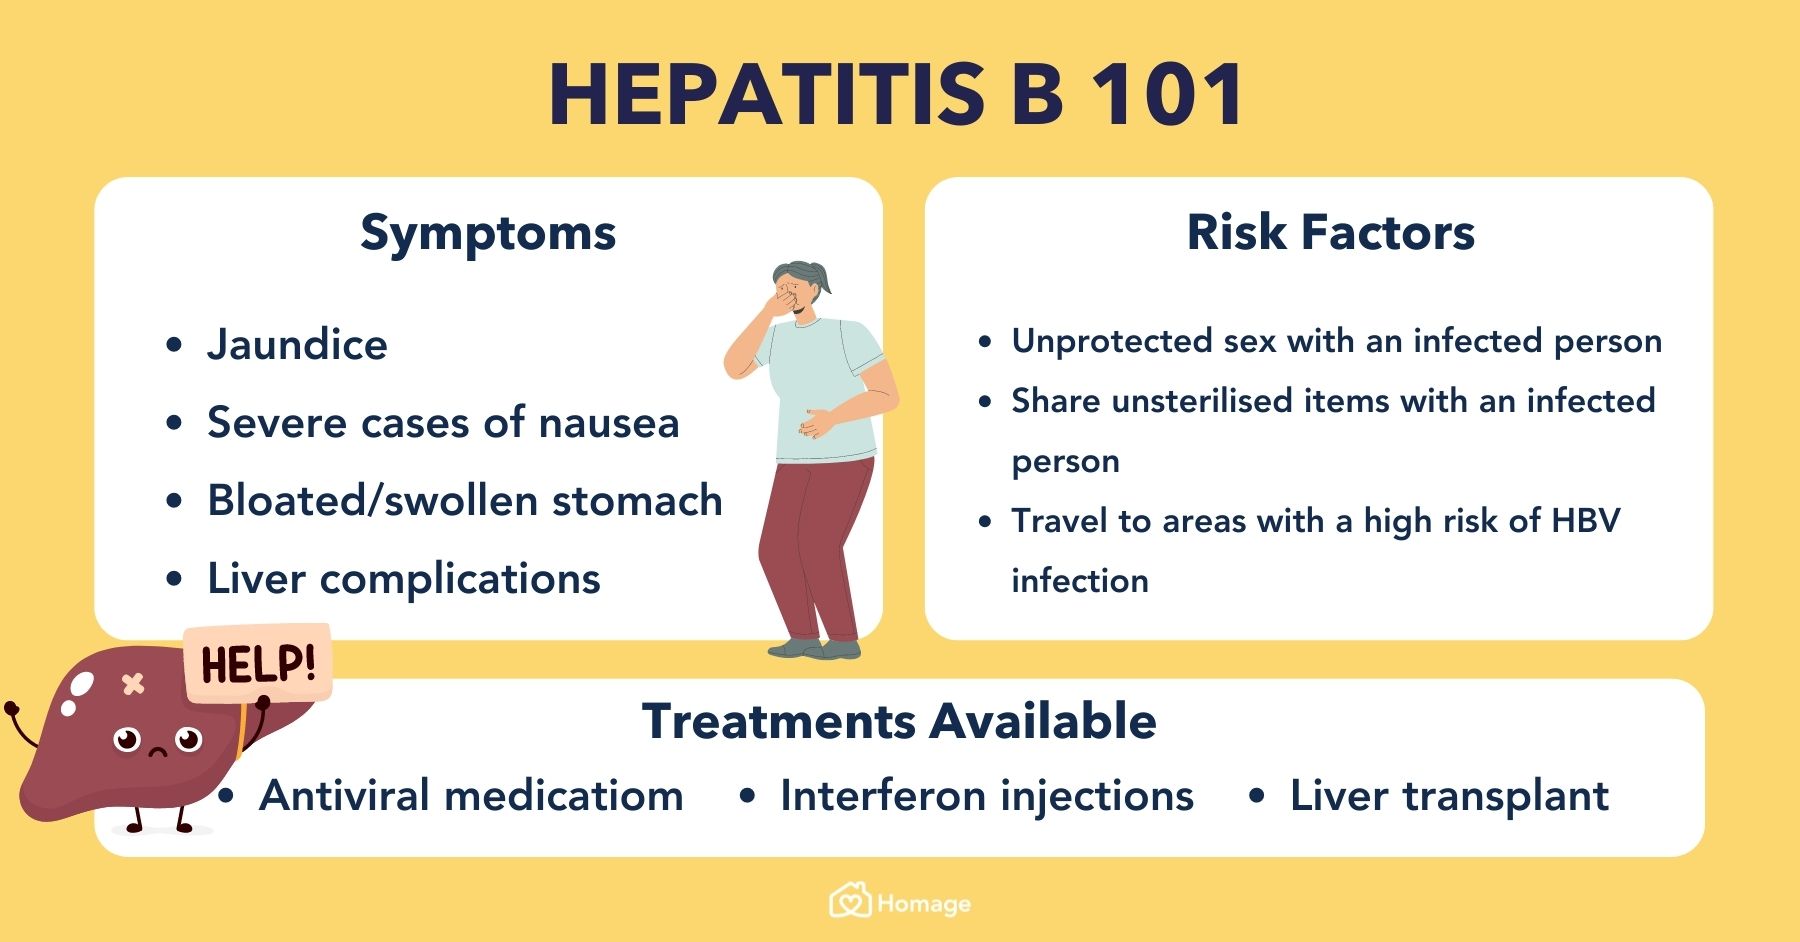 Does inactive hepatitis B go away?